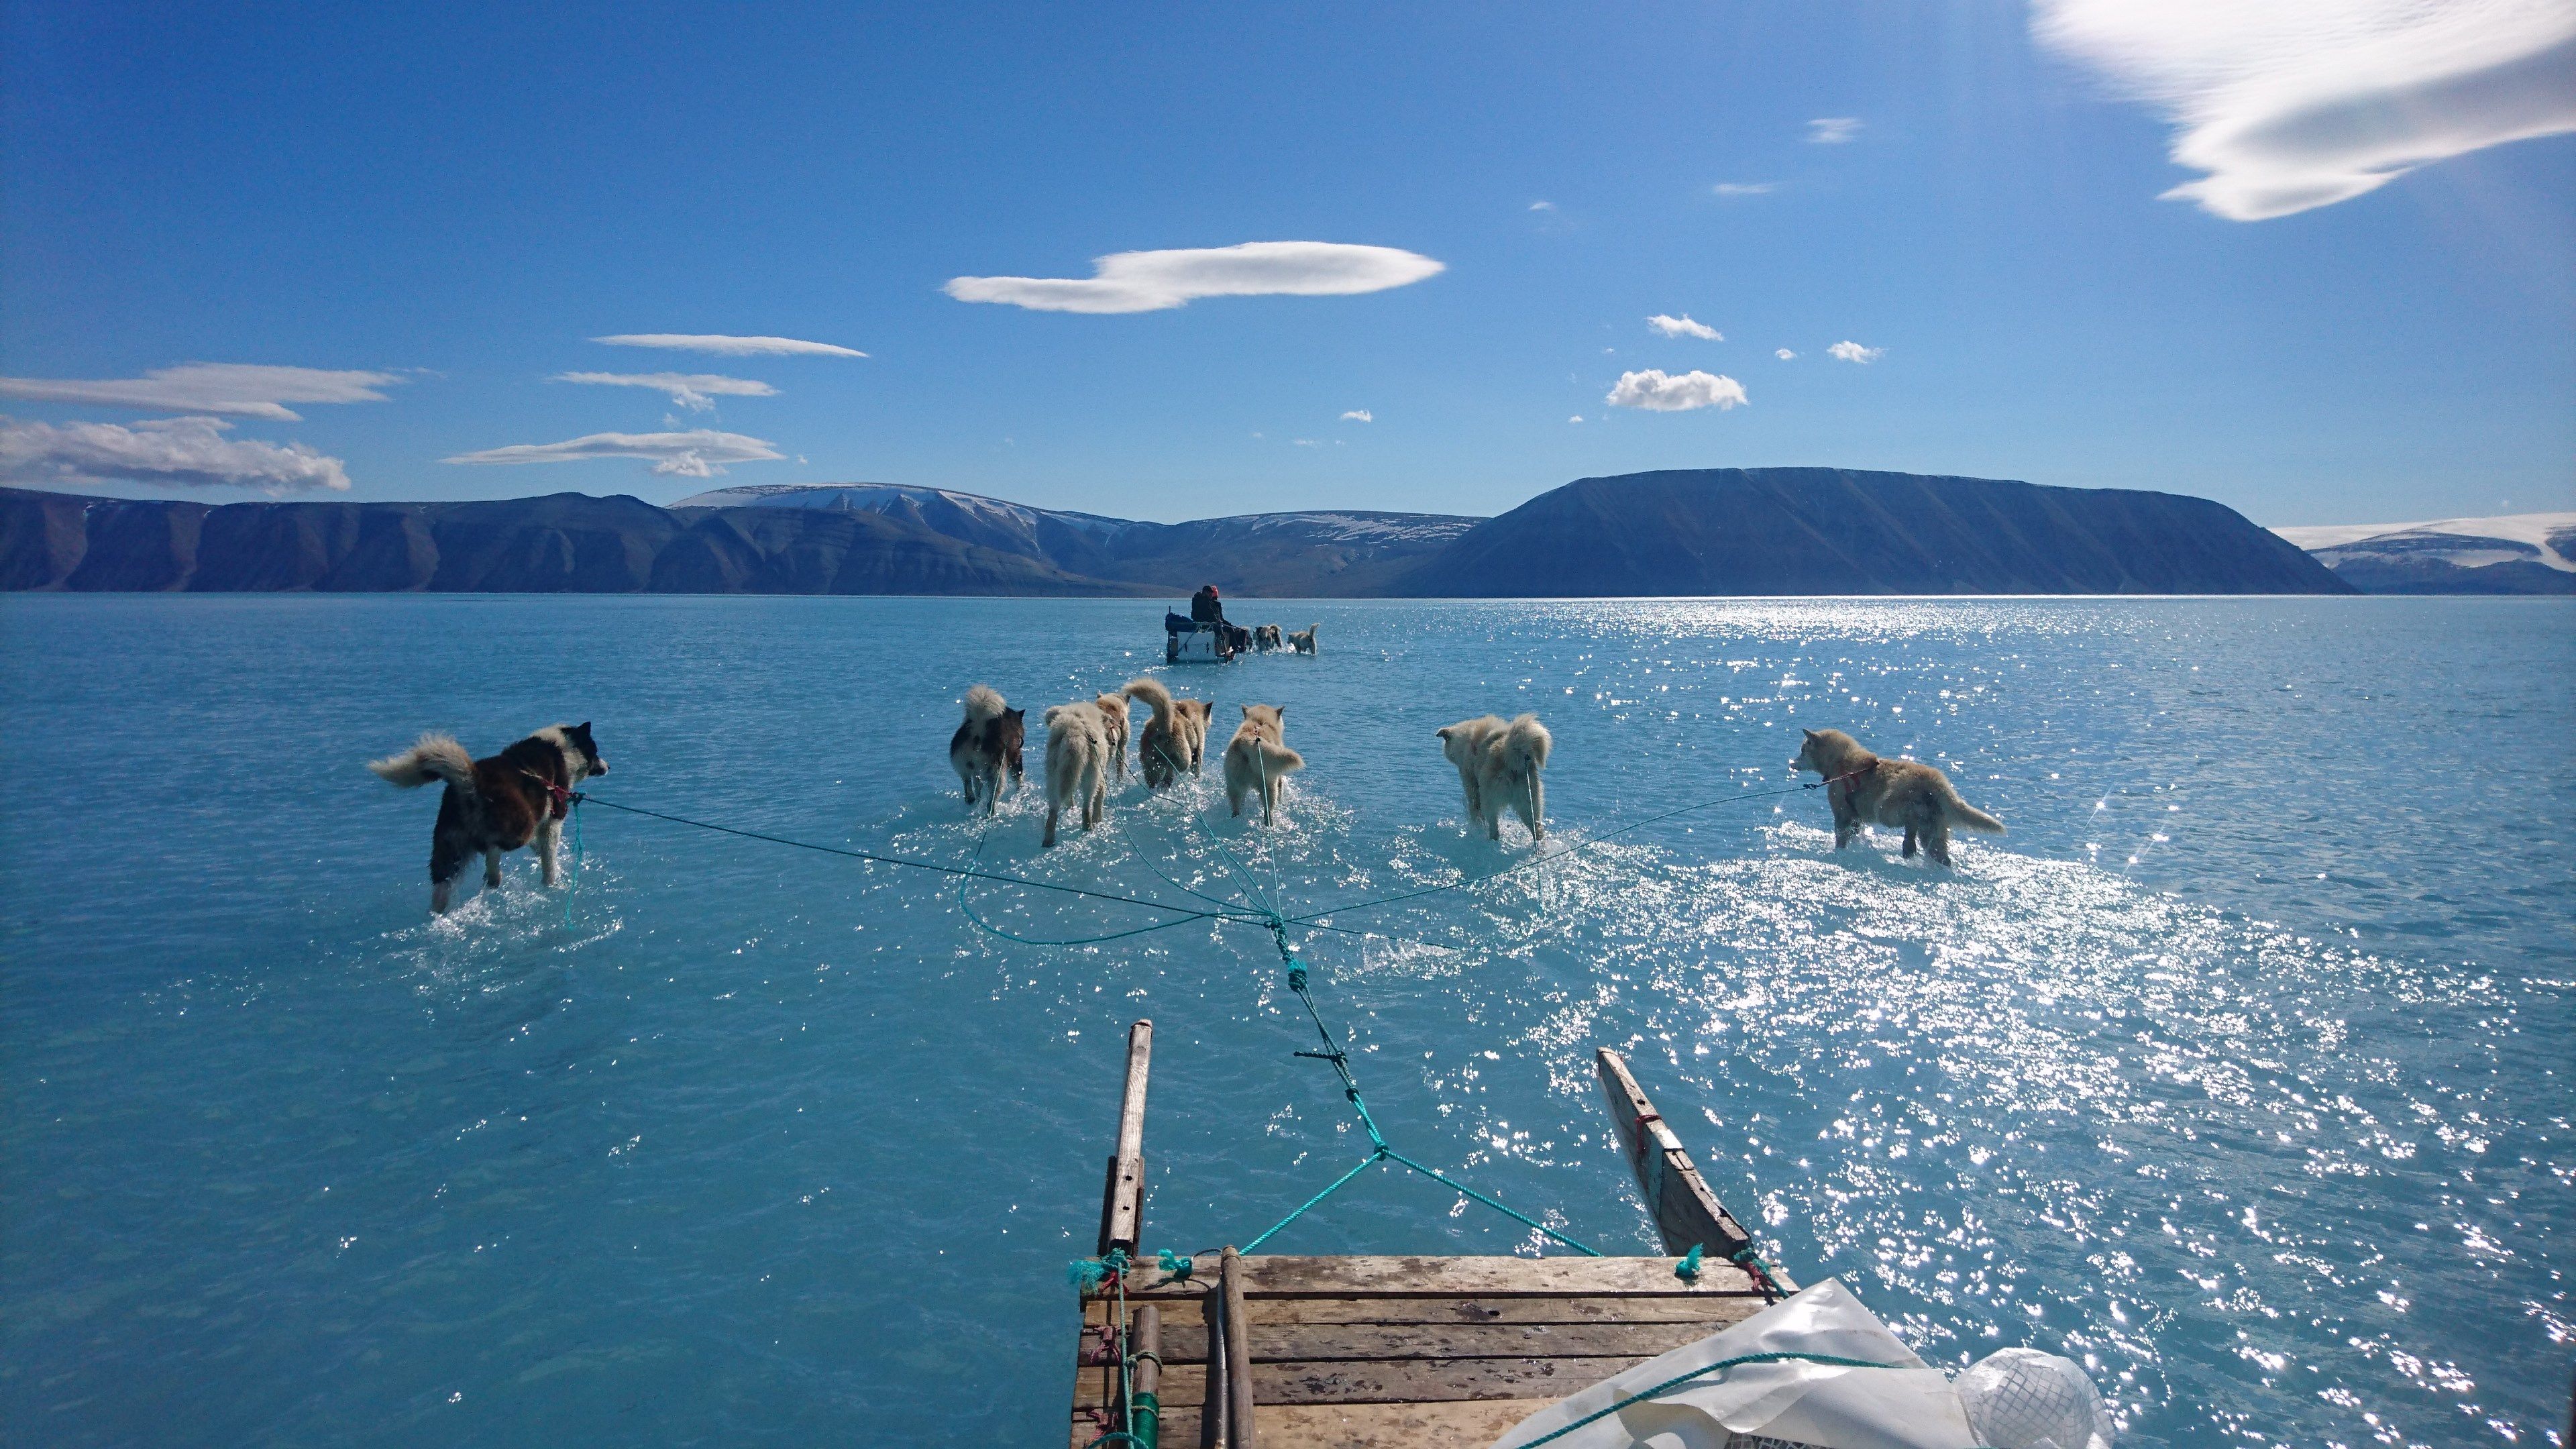 Fotografía facilitada por el Instituto Metorológico de Dinamarca que muestra la fotografía tomada por Steffen M. Olsen, uno de sus investigadores, en el noroeste de Groenlandia el pasado 13 de junio en la que se ve un trineo que avanza por el hielo derretido, con las patas de los perros sumergidas en el agua en el fiordo de Inglefield. 